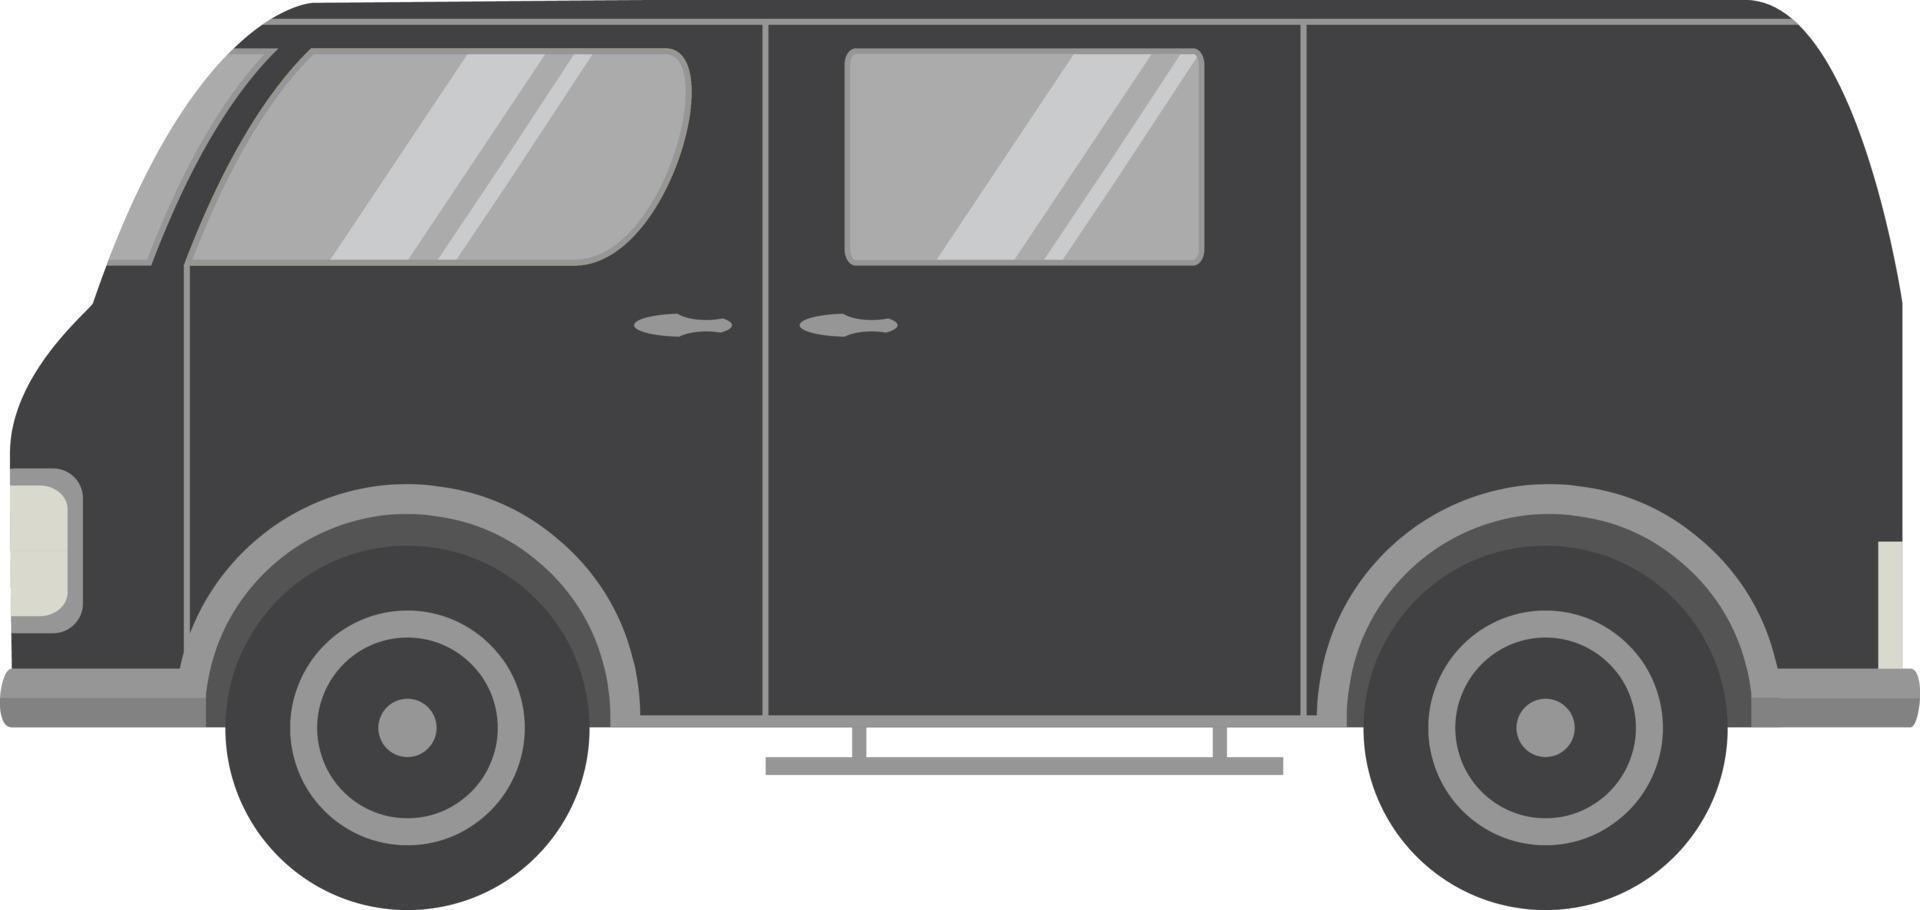 vector plano con la imagen de la furgoneta turística car.flat un retro un vehículo para viajar. autobús de época. un elemento para el diseño del sitio web de viajes, entrega de mercancías, un elemento infográfico.